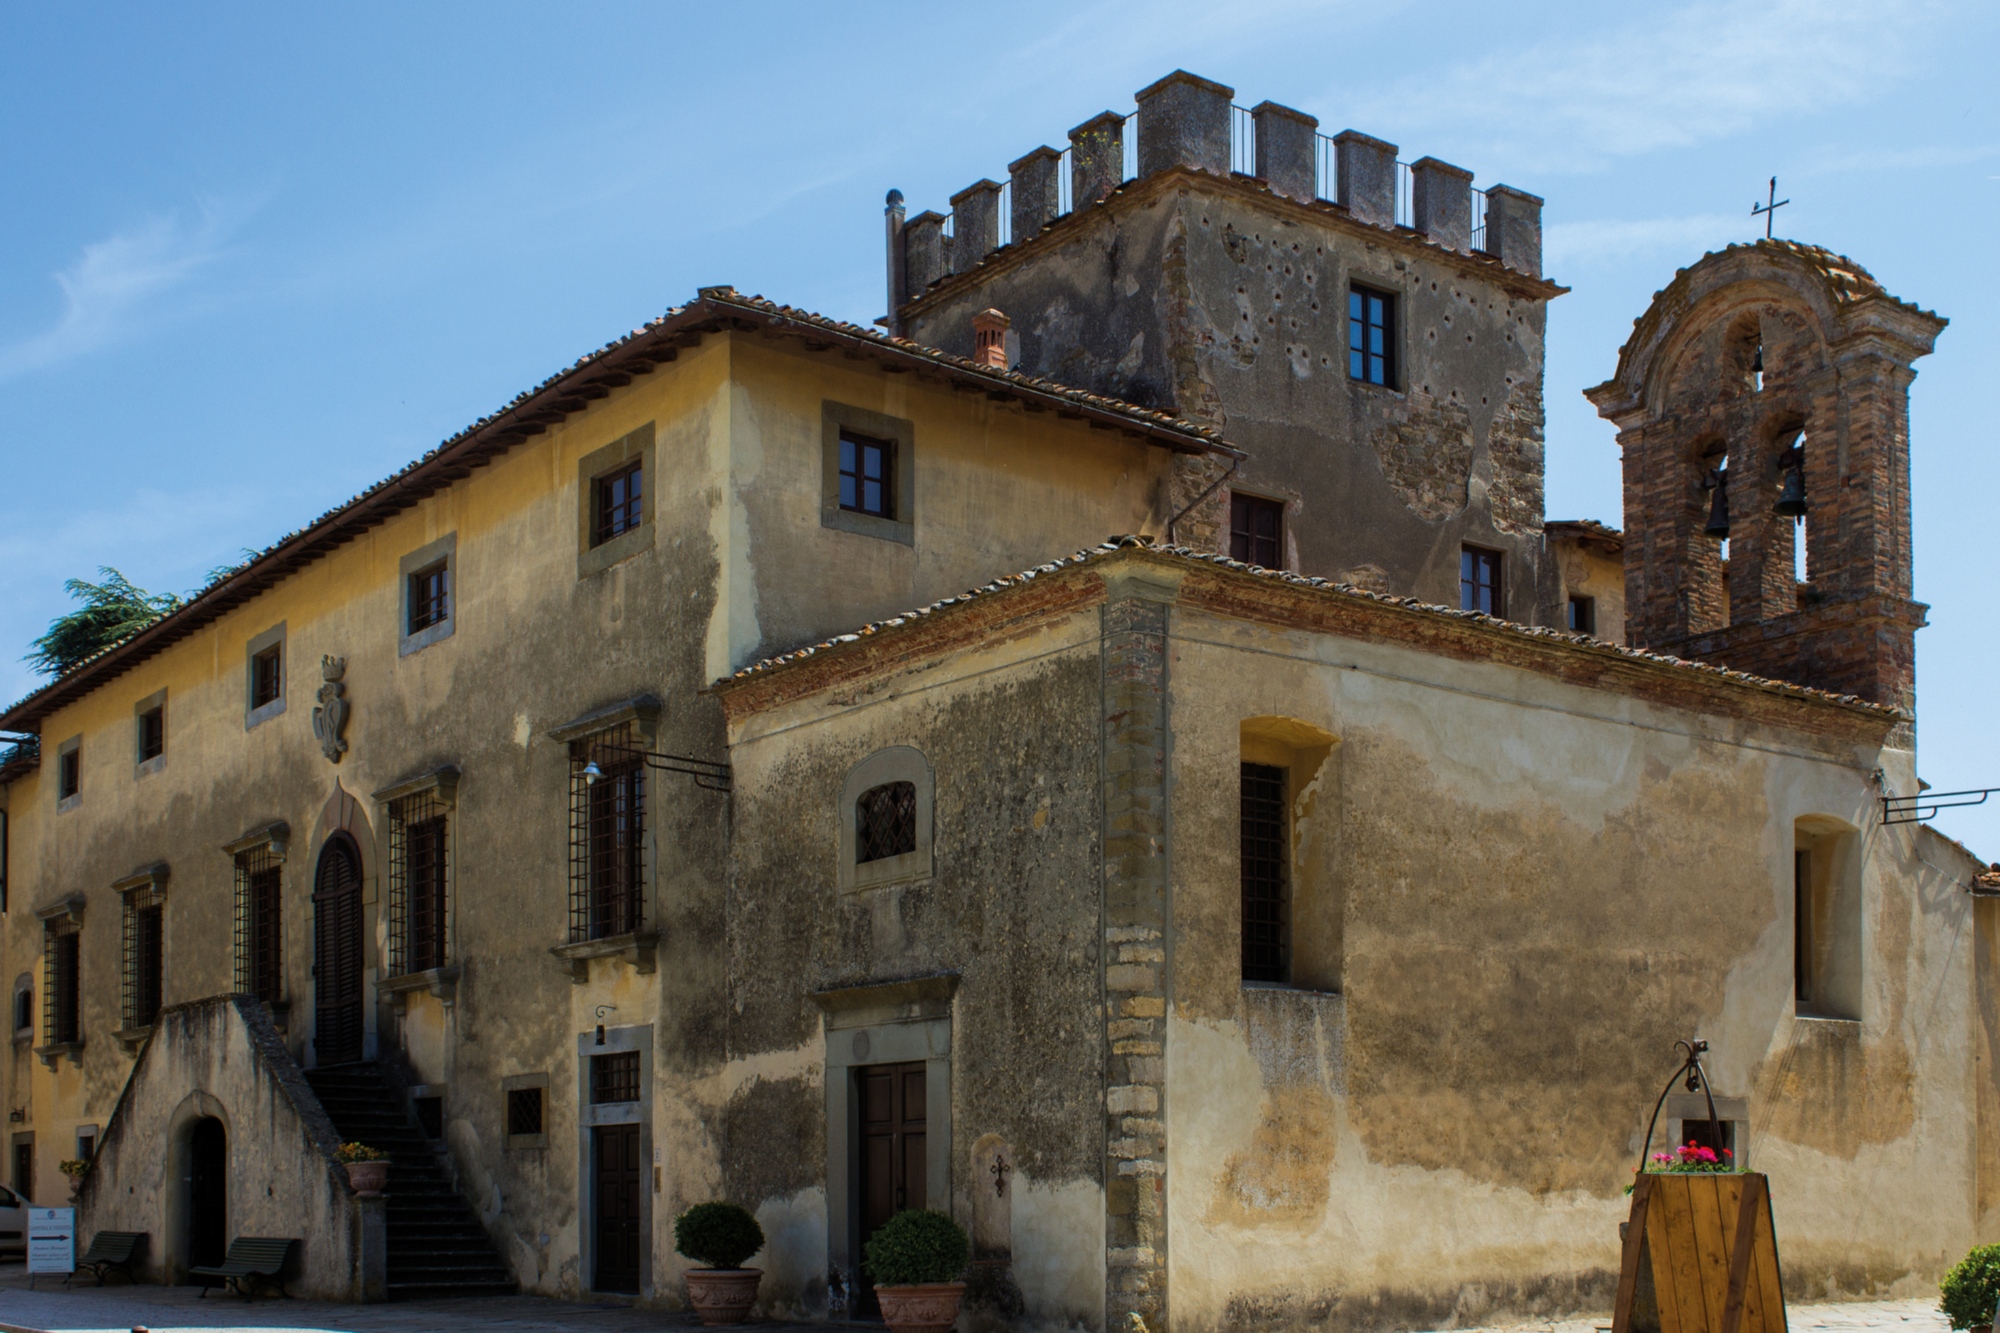 Montozzi Castle